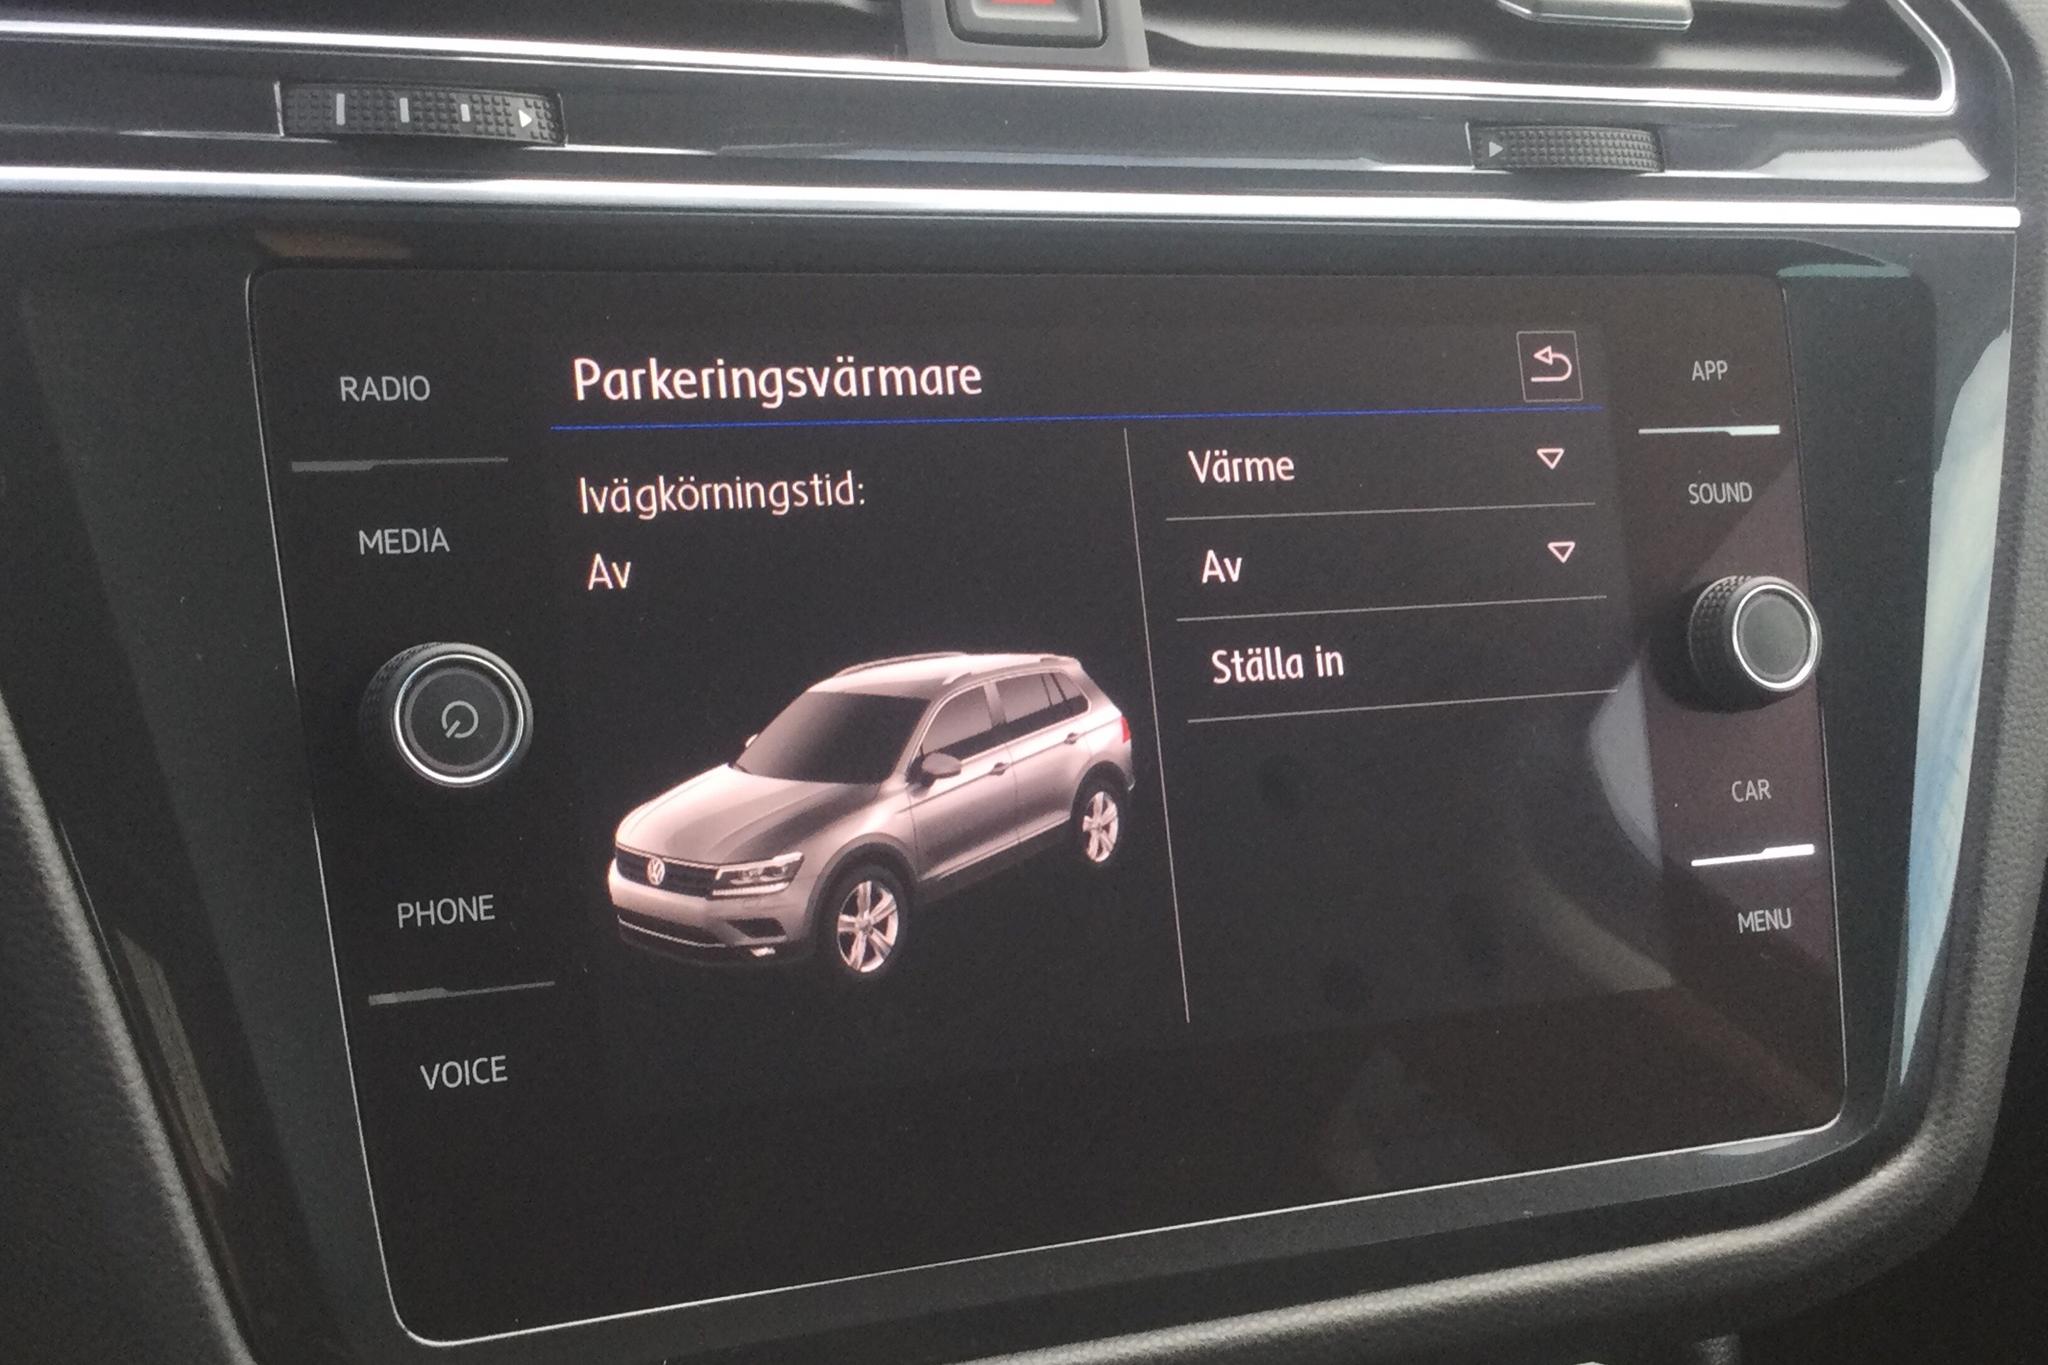 VW Tiguan 2.0 TDI 4MOTION (190hk) - 128 340 km - Automatic - black - 2019